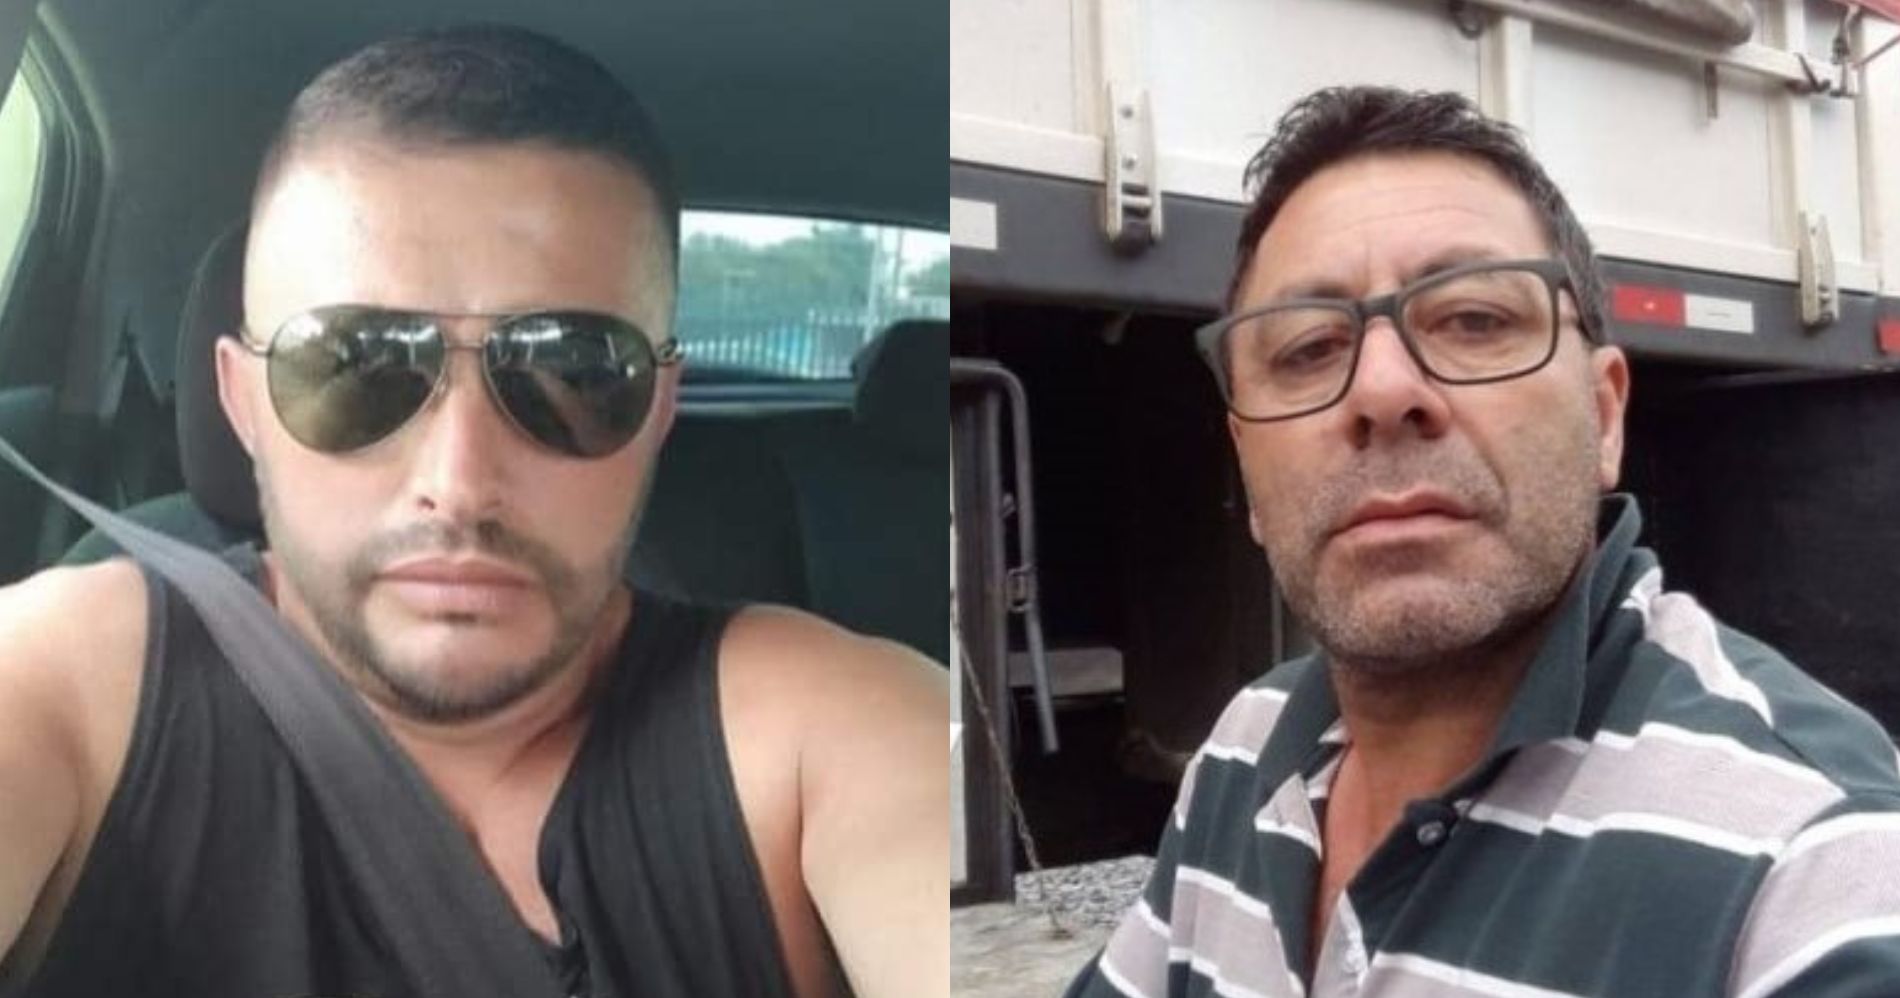 Os motoristas Nilson Antonio Kapp e Carlos Alberto Vieira Bueno, respectivamente, foram as duas vítimas fatais do acidente.